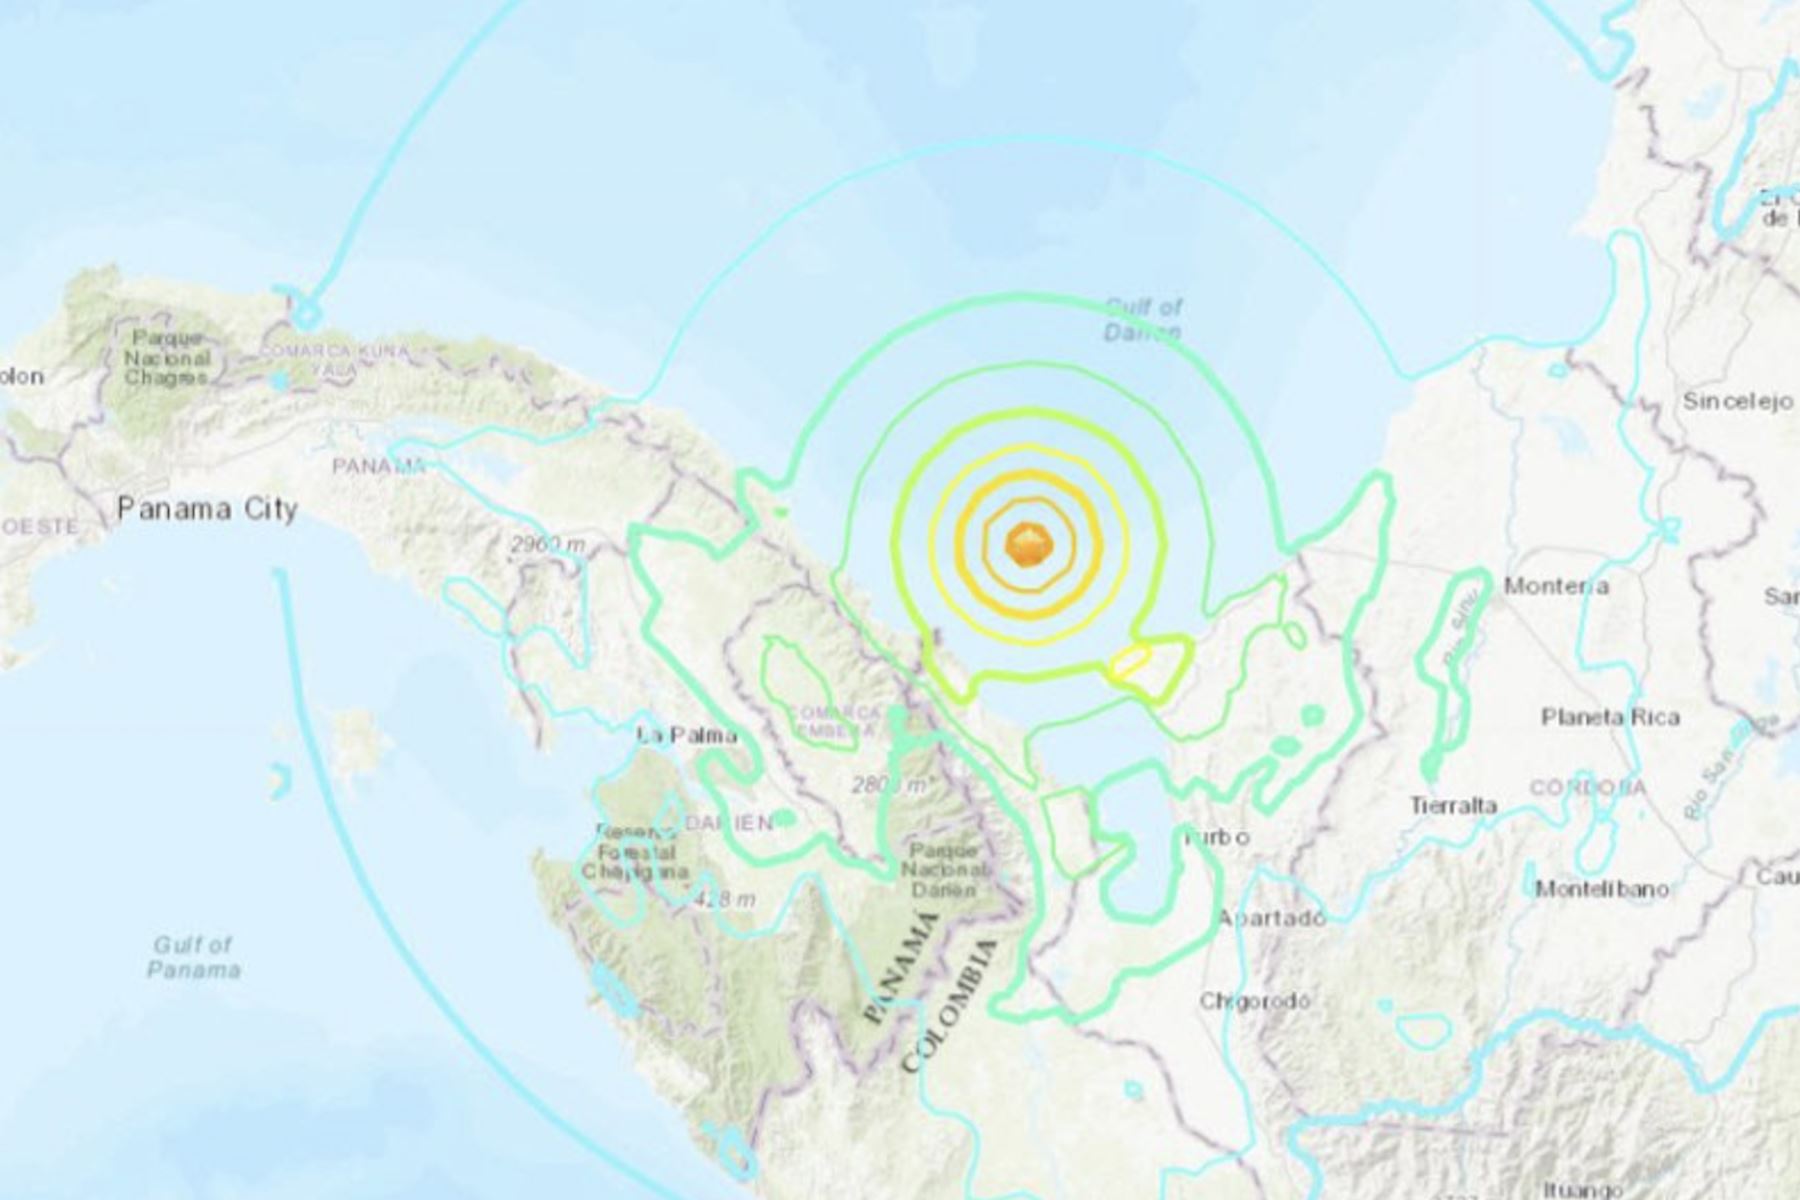 Las autoridades no han informado de víctimas mortales ni de heridos por el sismo de magnitud 6.6. Mapa: USGS